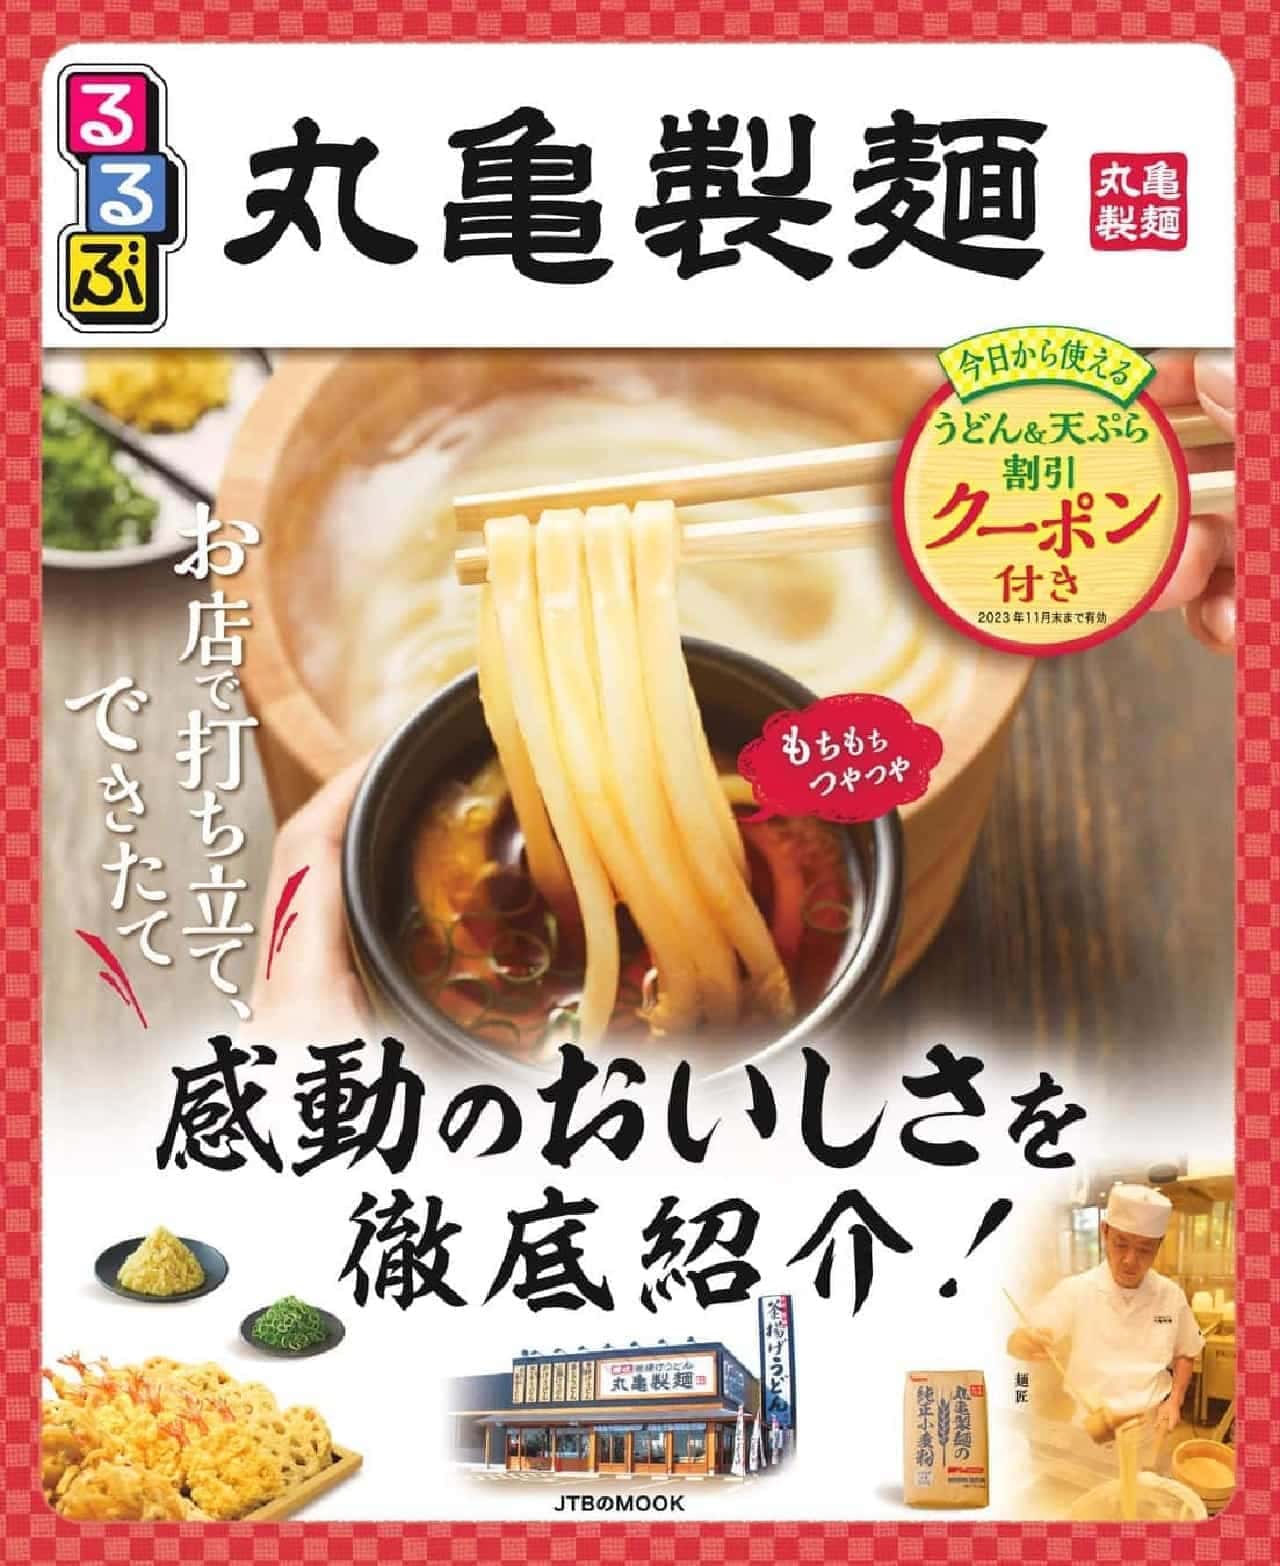 丸亀製麺×るるぶ コラボムック本「るるぶ丸亀製麺」